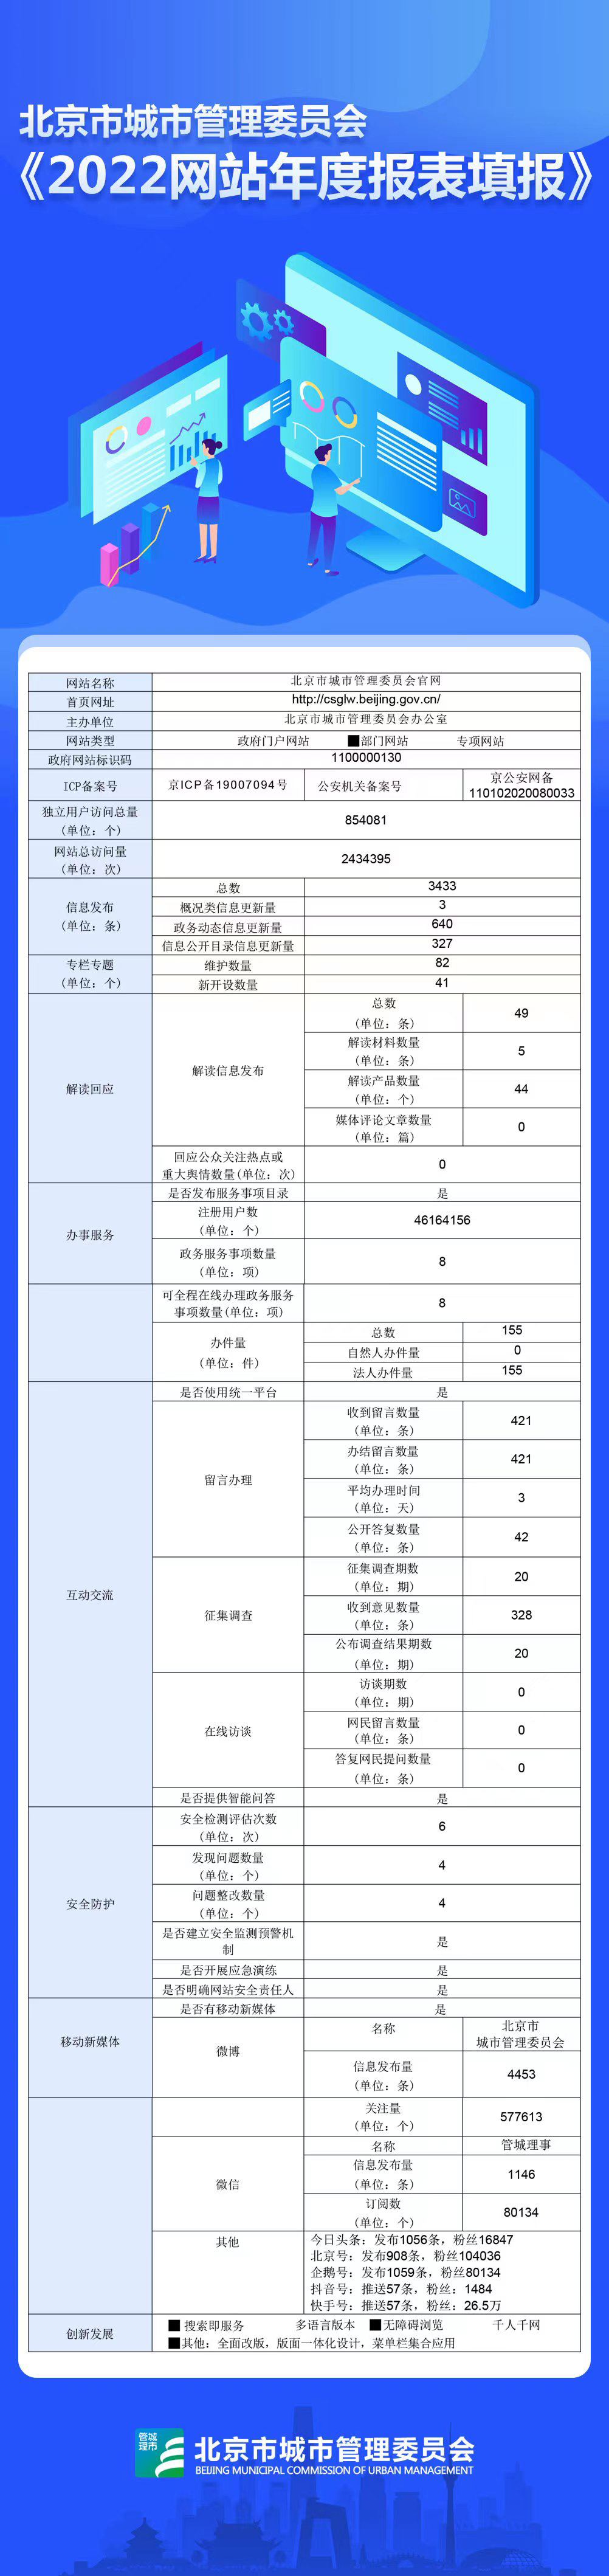 北京市城市管理委员2022年政府网站年度工作报表